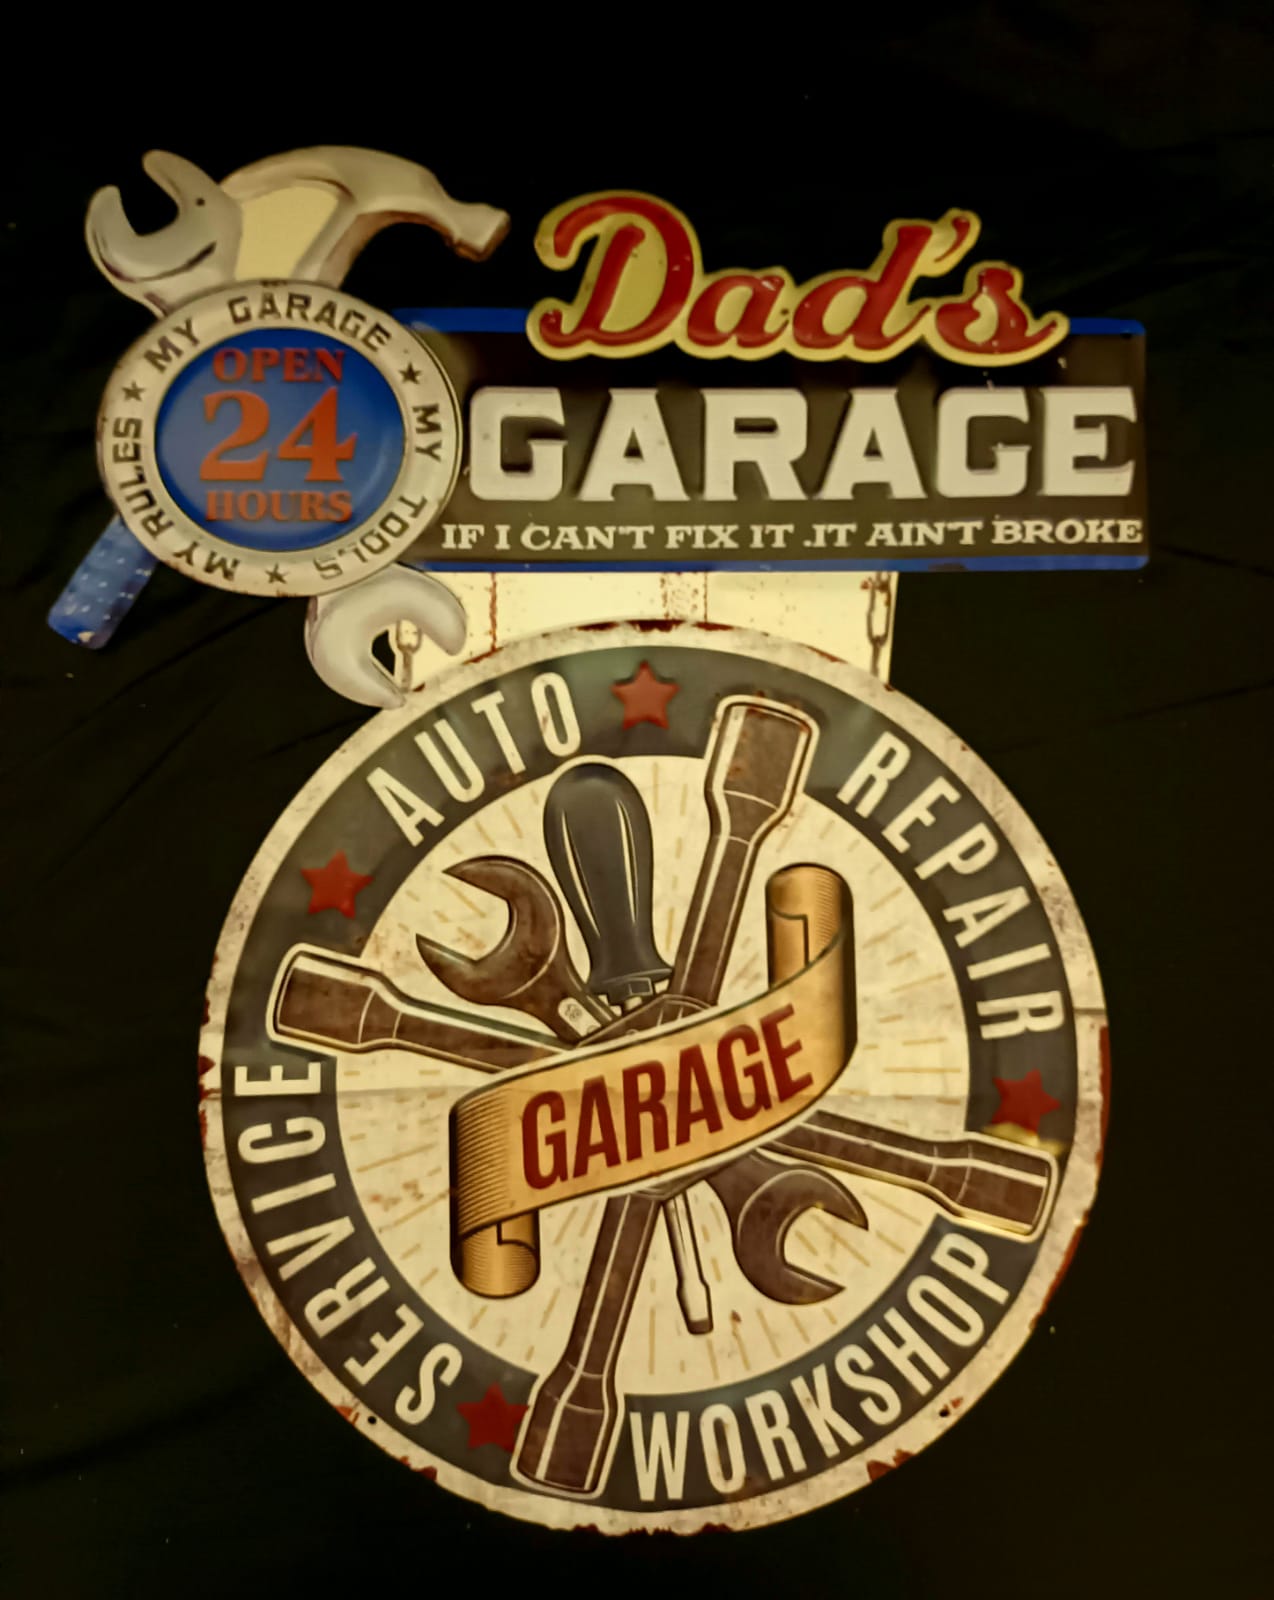 Blechschild "Dads Garage"